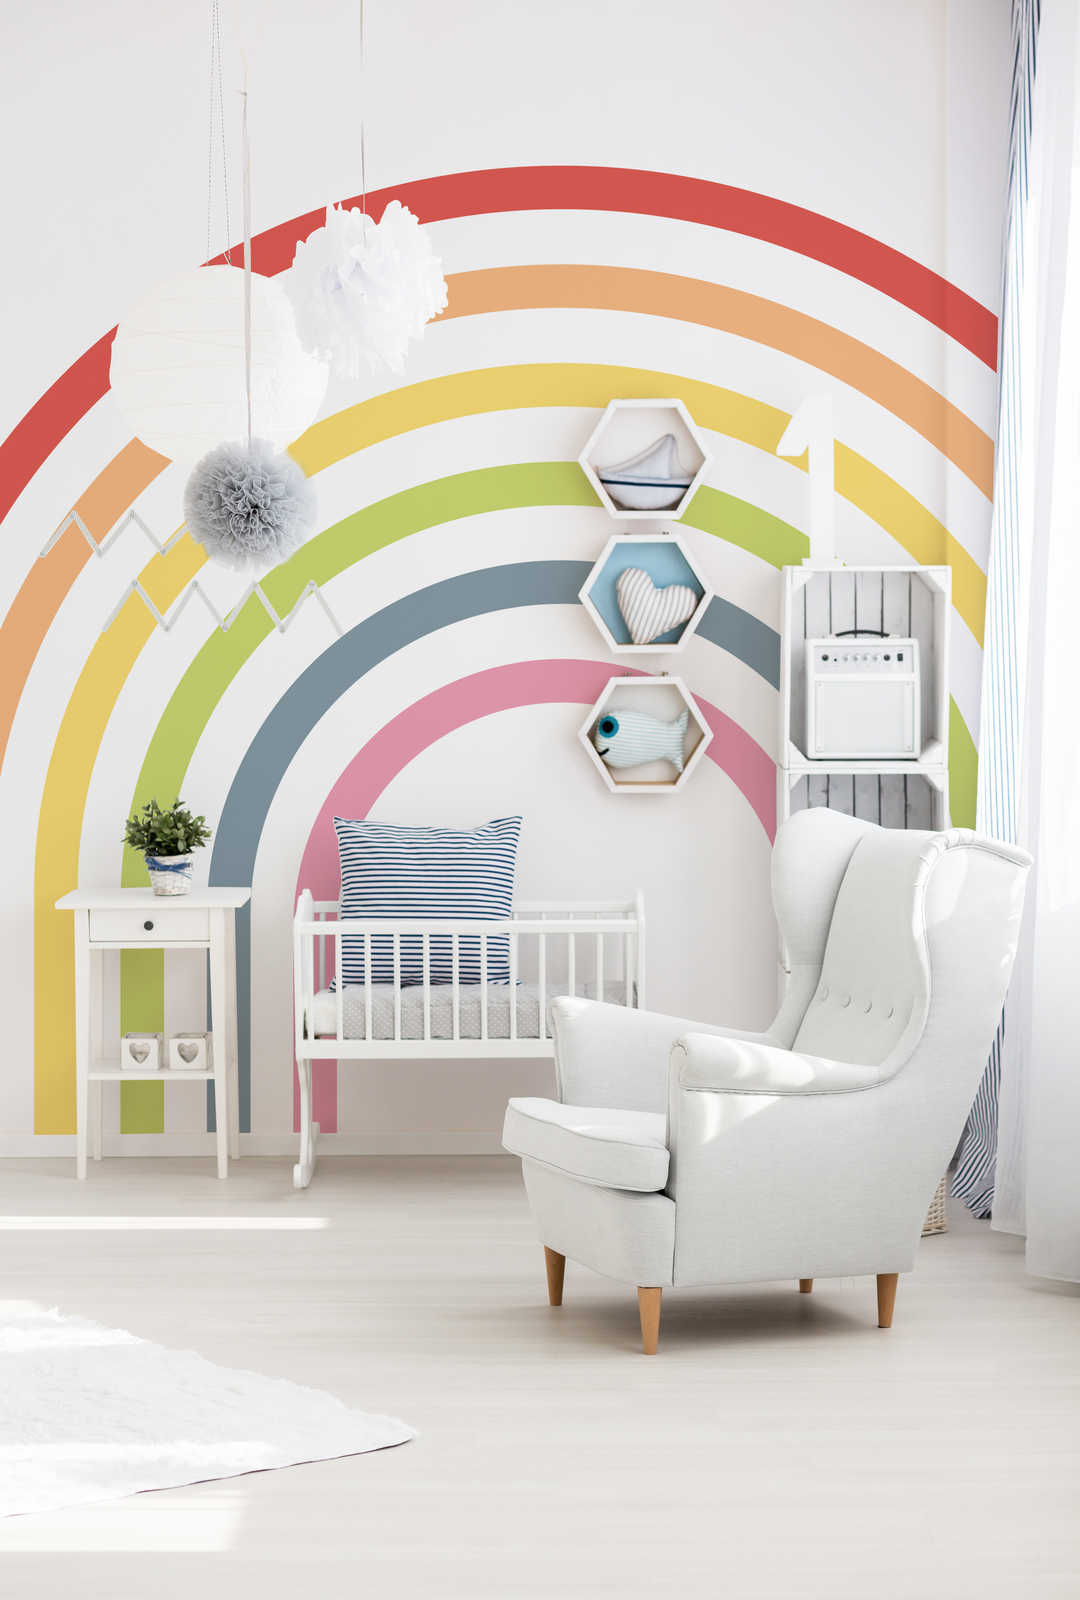 Fototapete Kinderzimmer Regenbogen in bunten Farben
